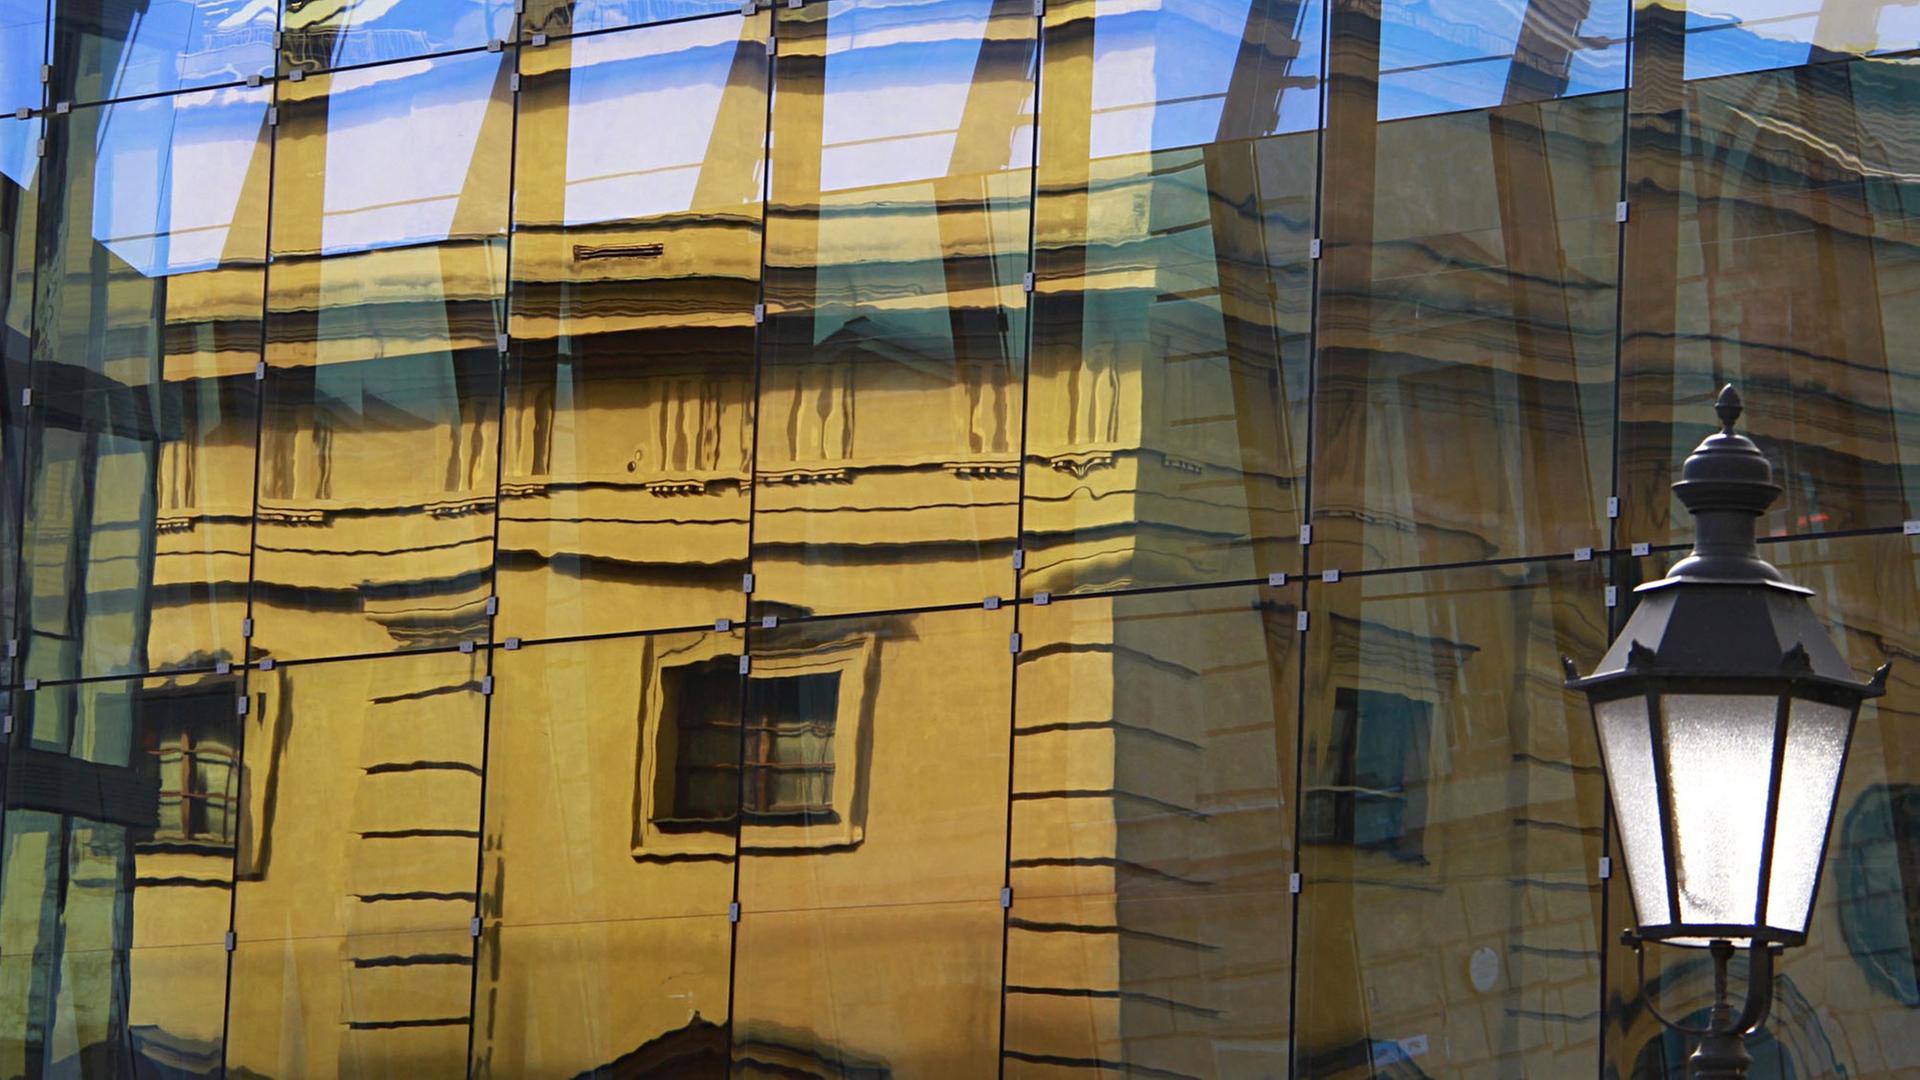 Das Gebäude vom Marstall spiegelt sich in den Glasscheiben vom Nachbargebäude am 28.02.2014 in München (Bayern).